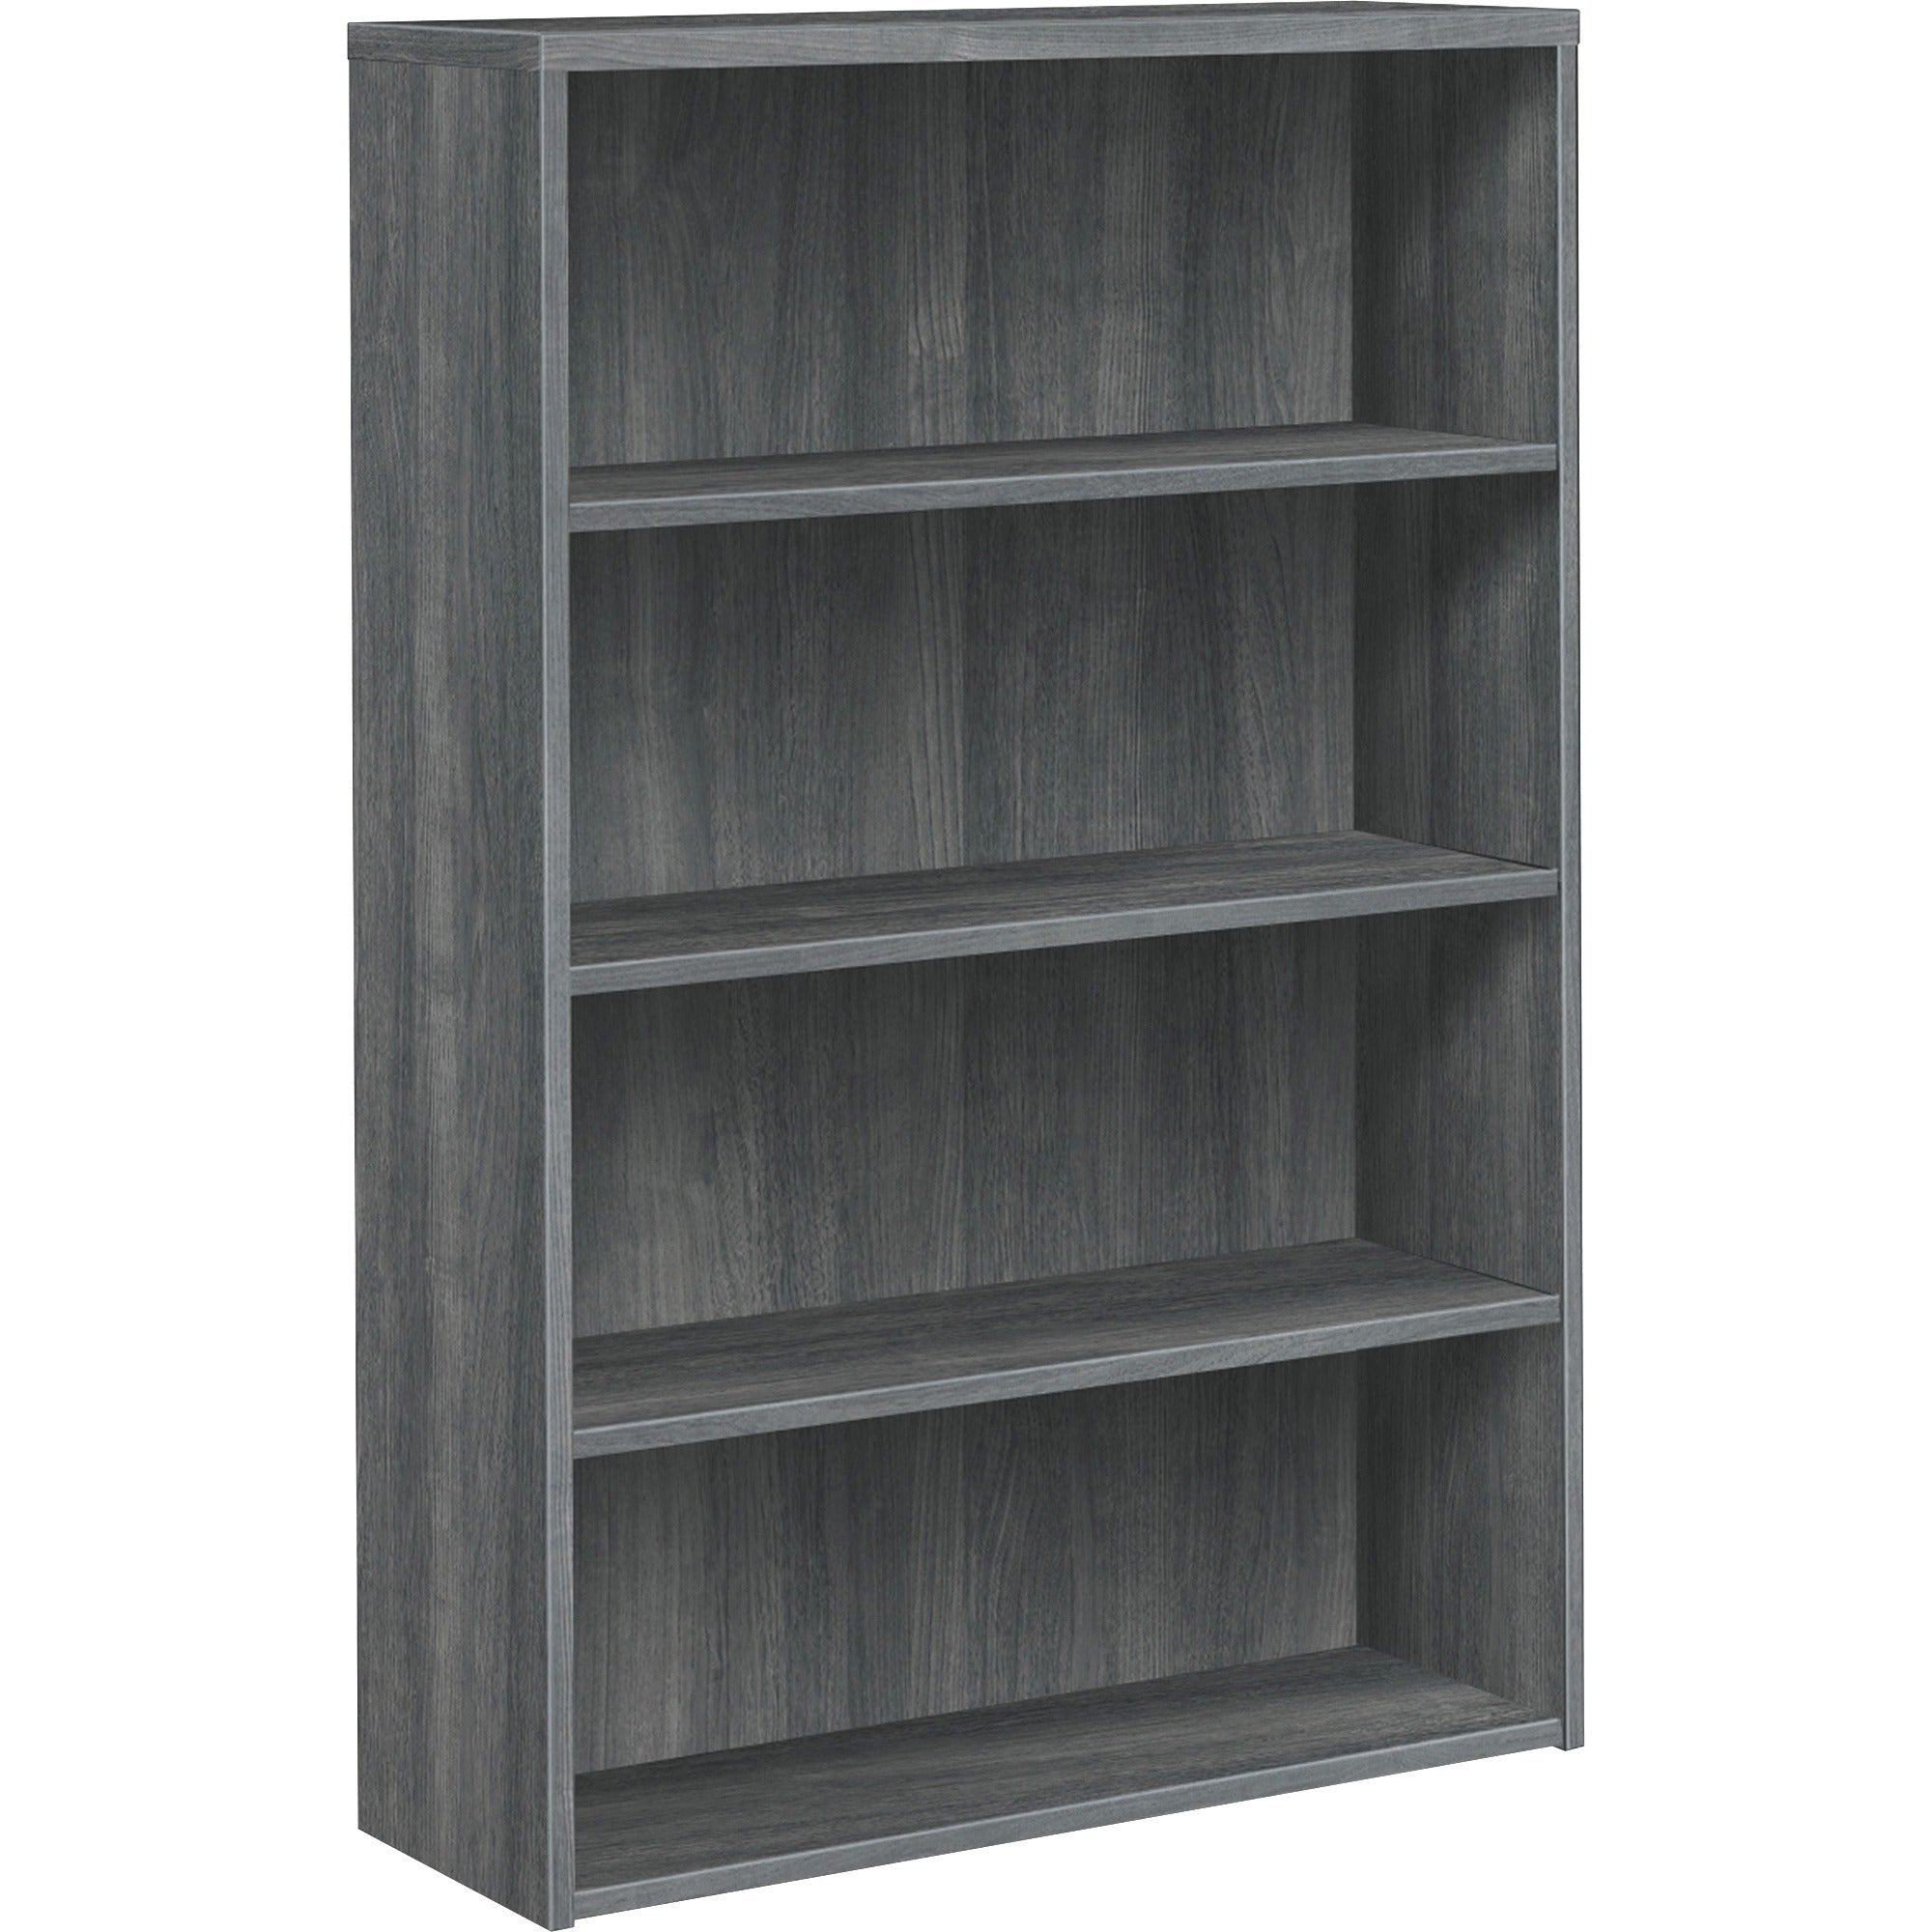 hon-10500-series-sterling-ash-laminate-desking-36-x-131571-4-shelves-material-wood-grain-metal-wood-finish-sterling-ash-laminate_hon105534ls1 - 1